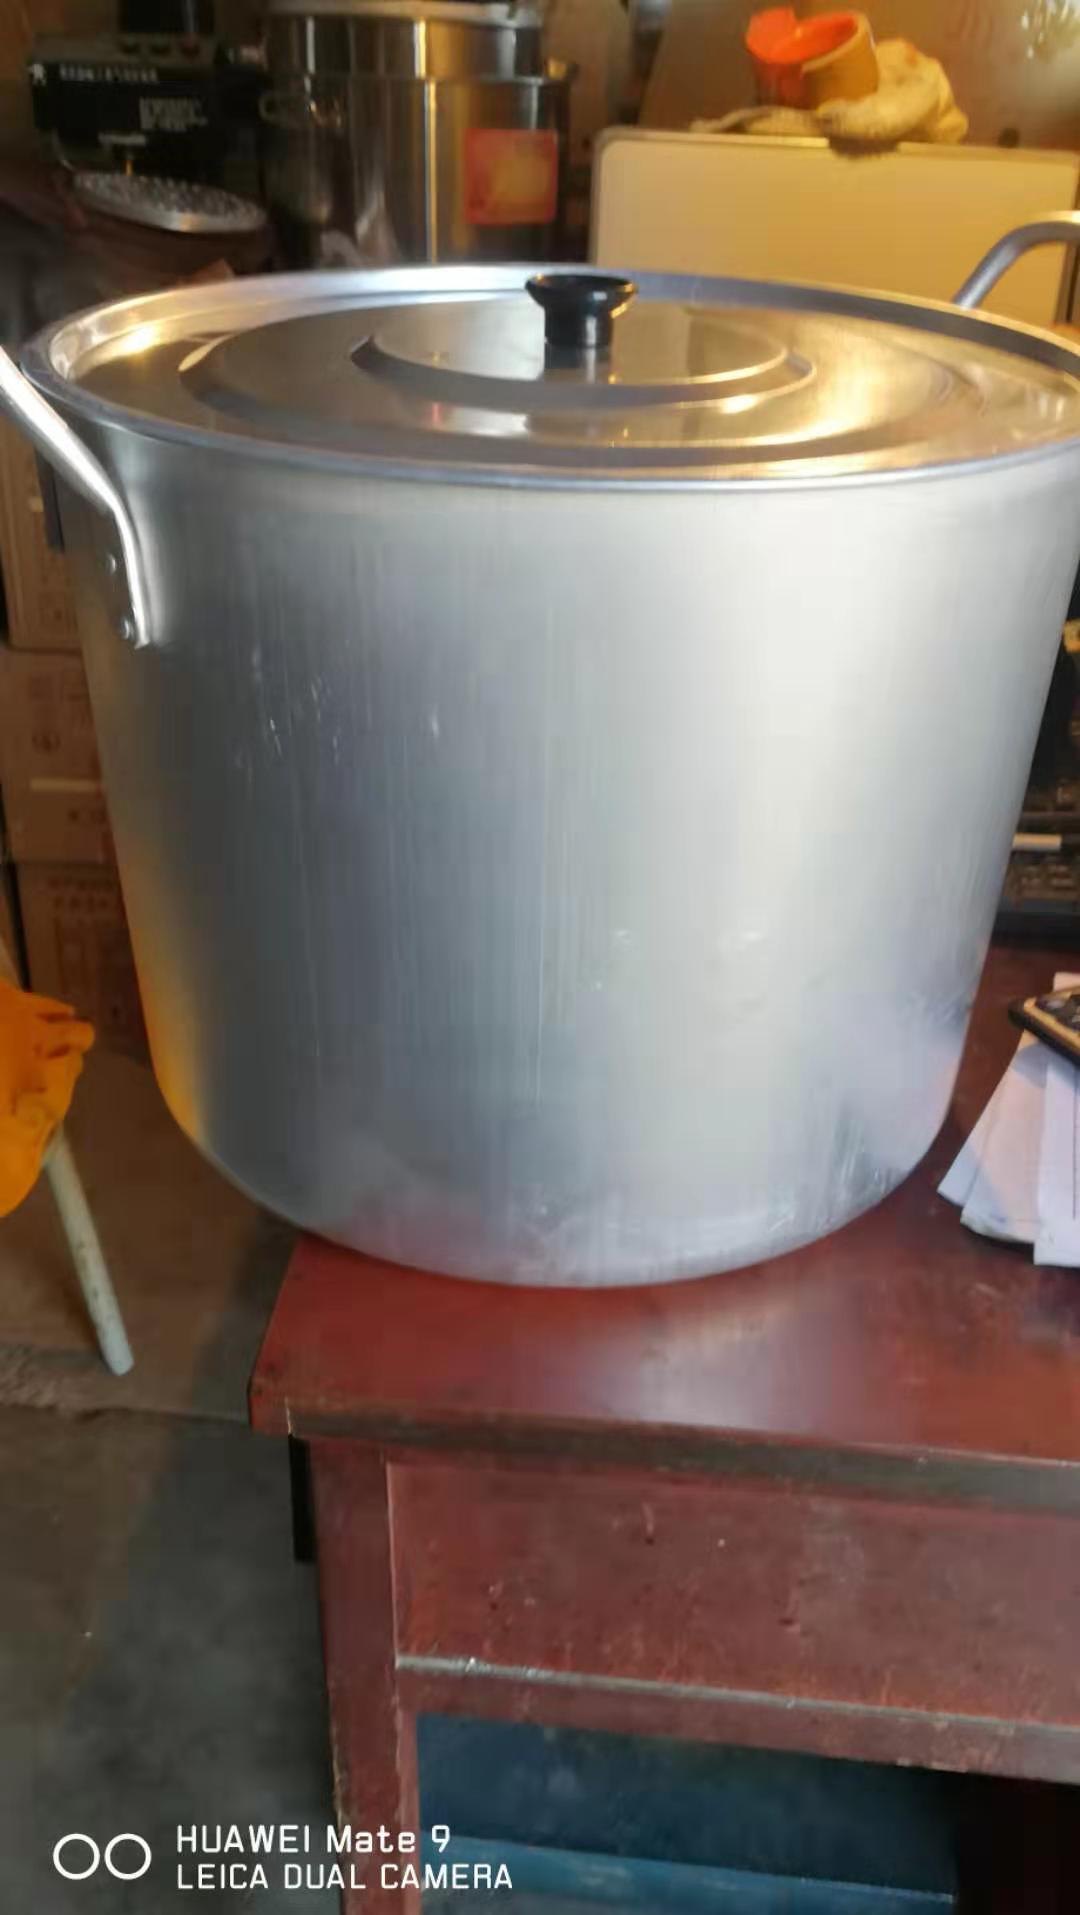 铝铝锅大汤锅厨房用铝锅盖子带把手多用铝锅